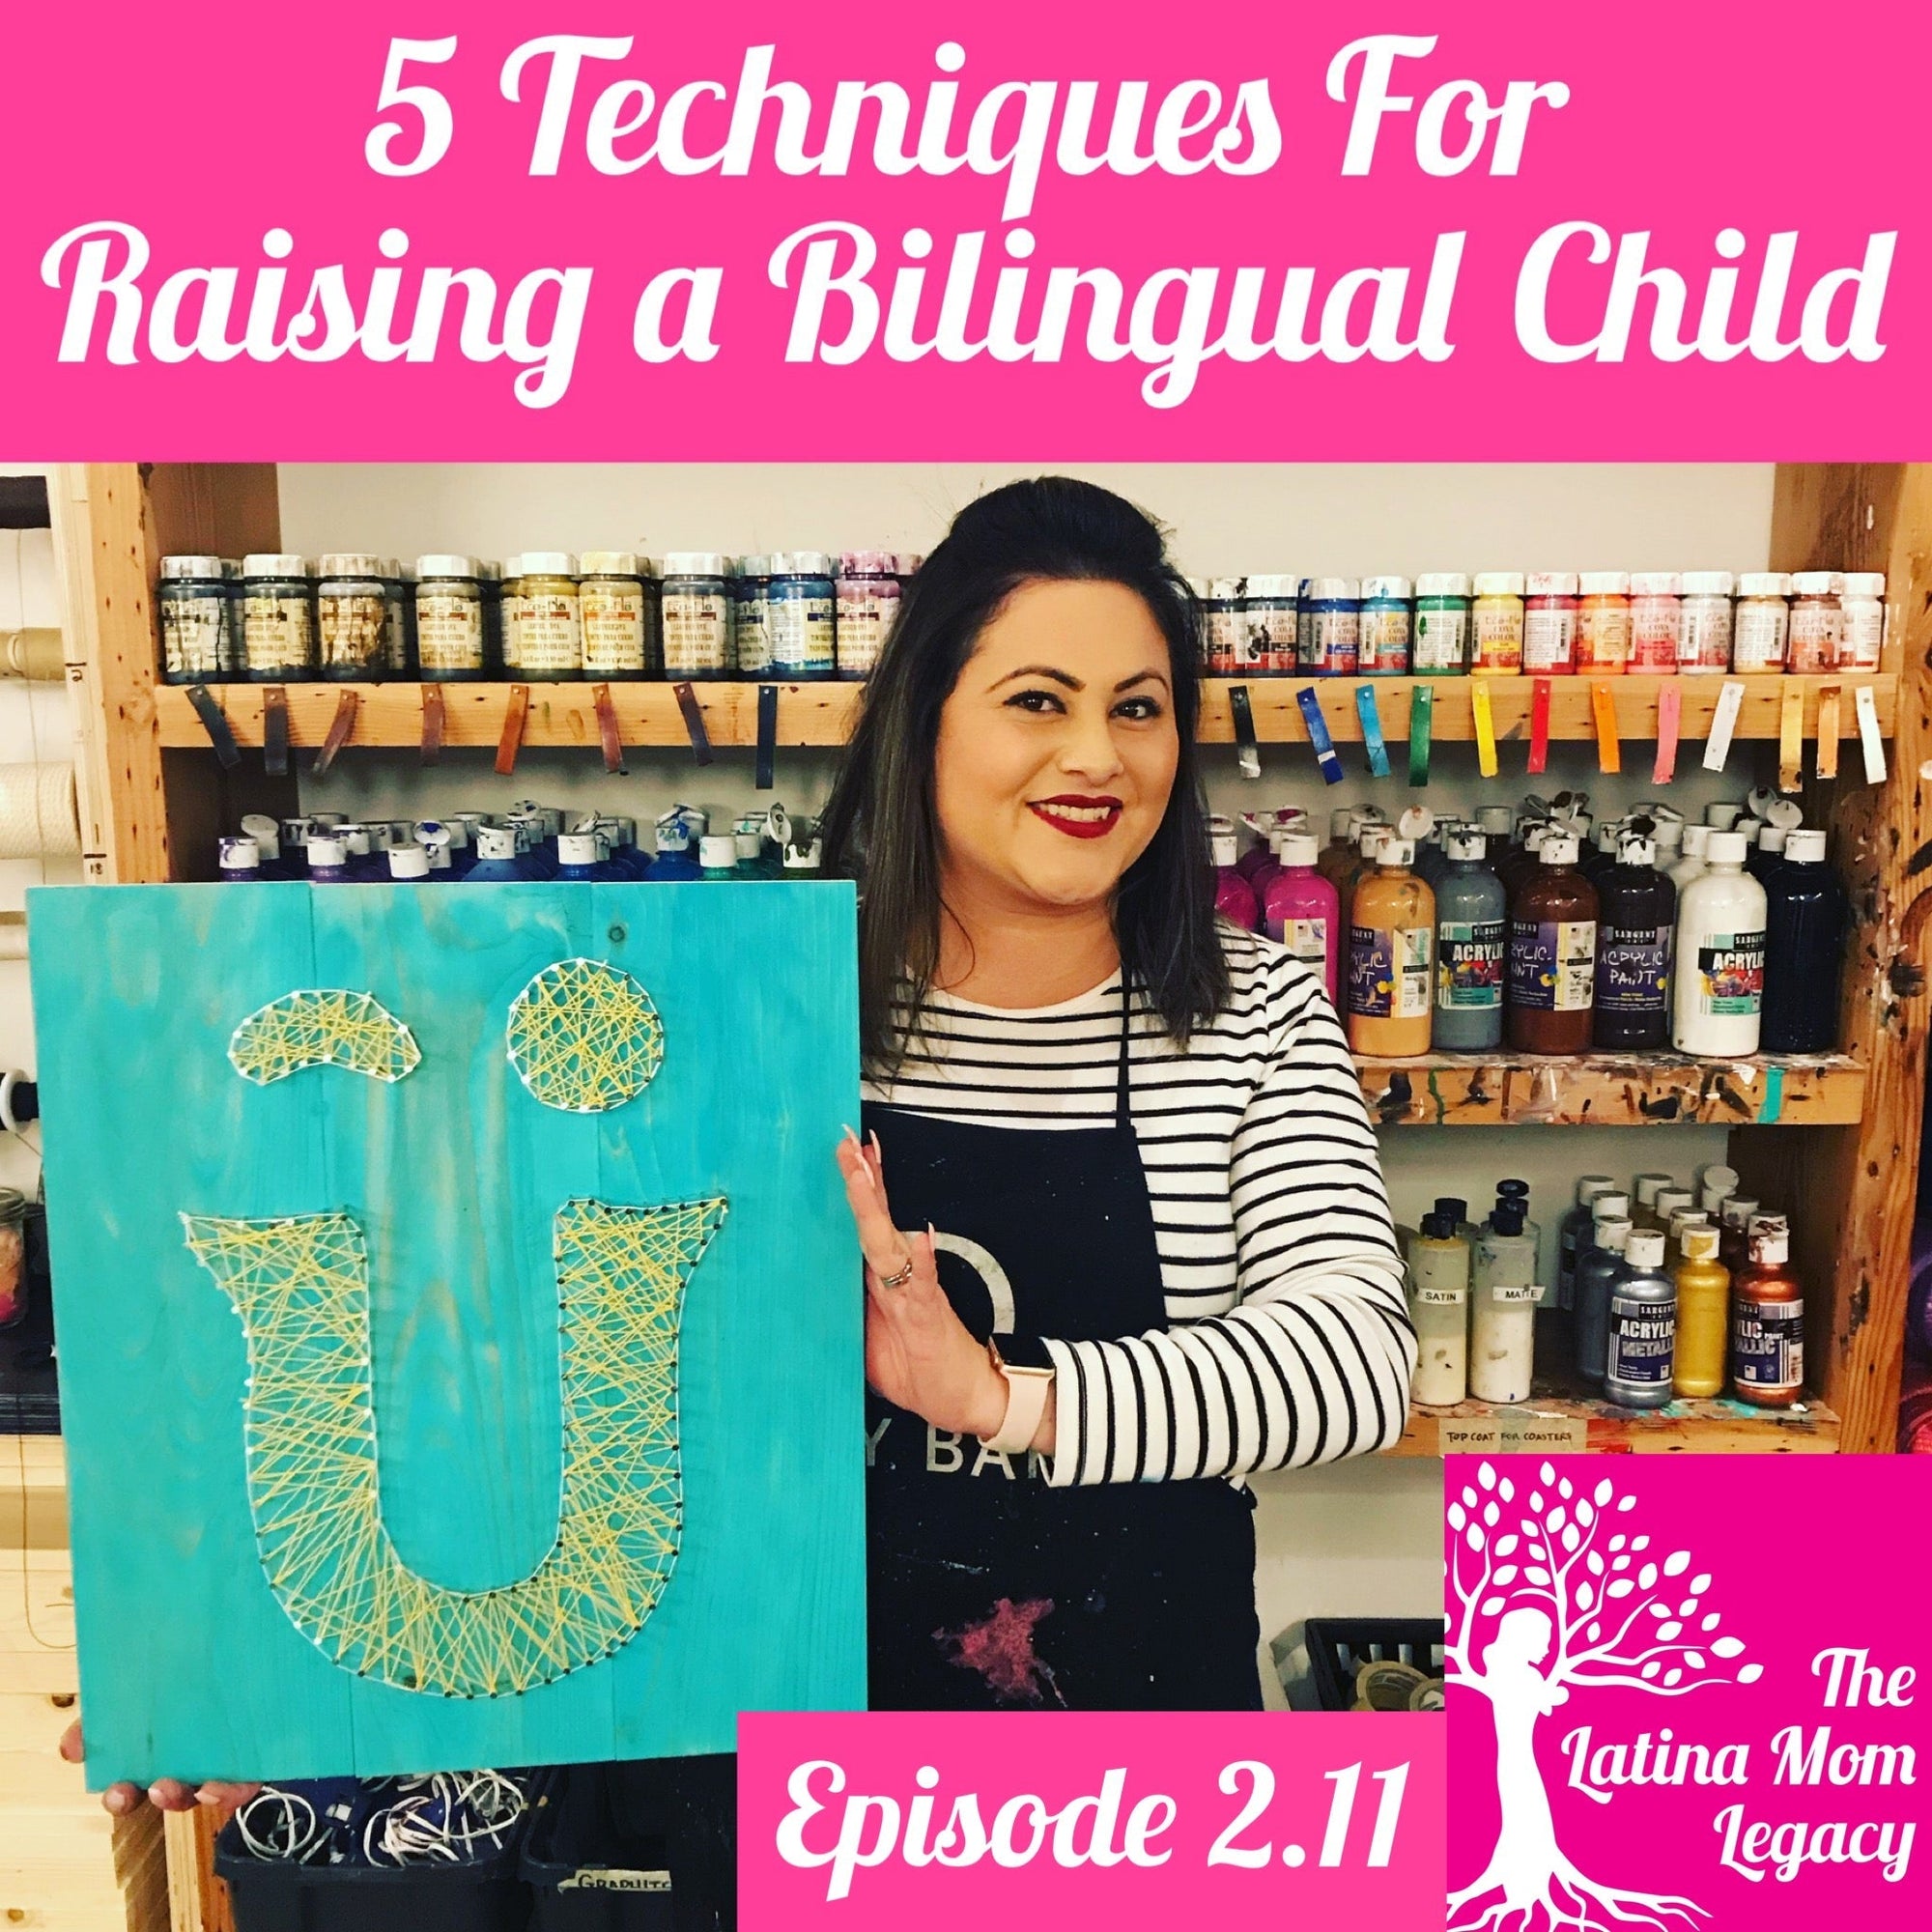 2.11 Veronica Villa - 5 Techniques For Raising a Bilingual Child From Nene Bilingue - Mi LegaSi